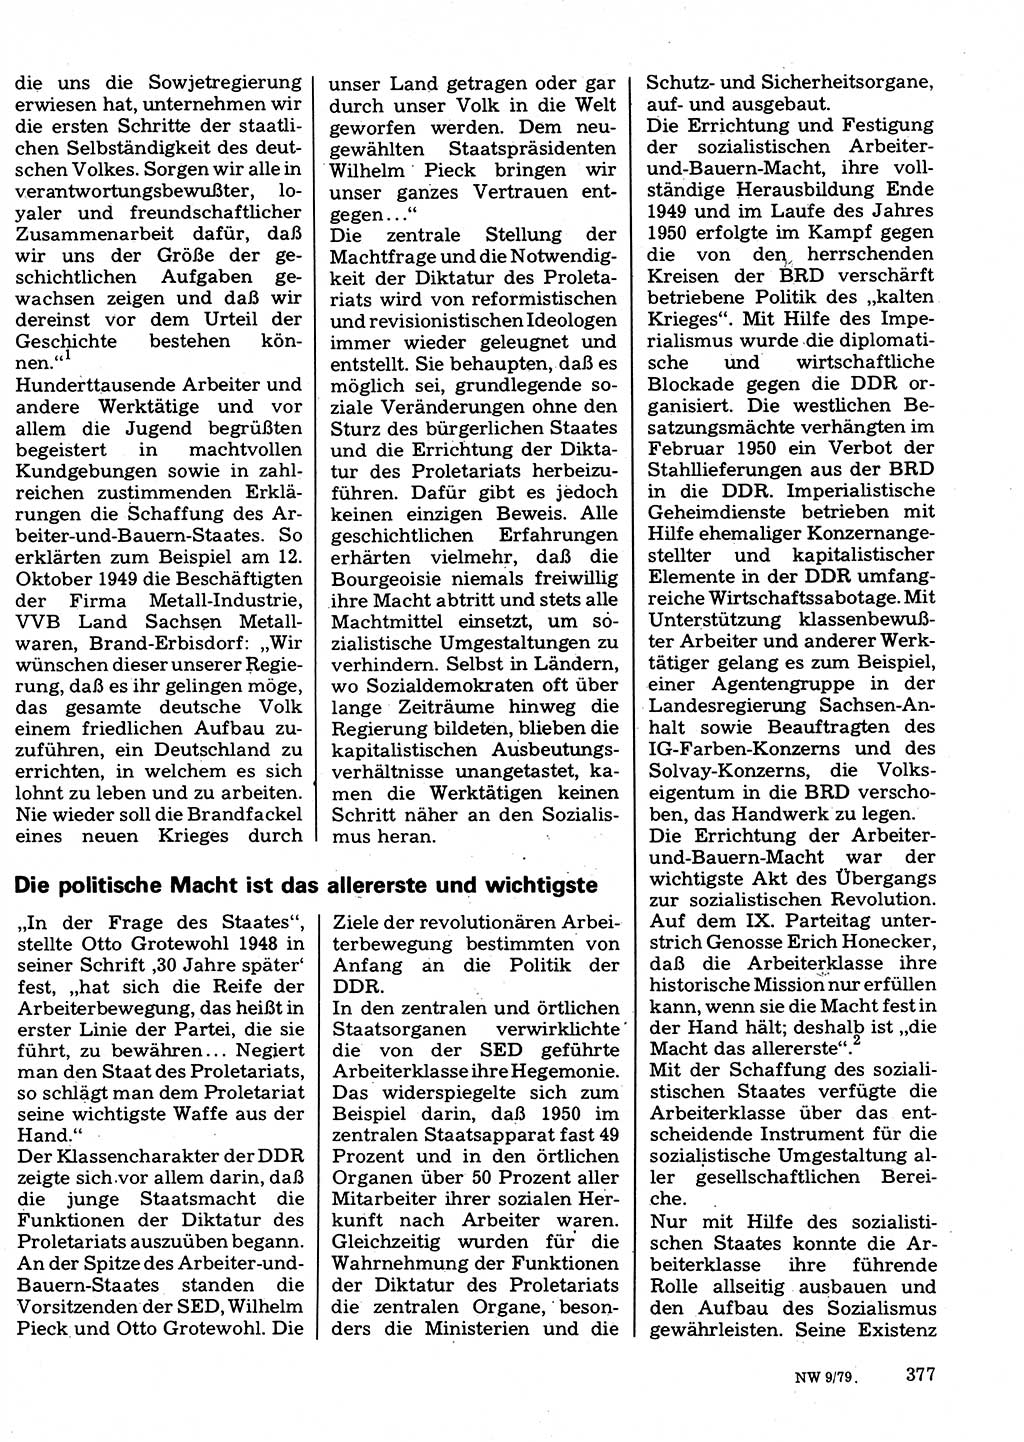 Neuer Weg (NW), Organ des Zentralkomitees (ZK) der SED (Sozialistische Einheitspartei Deutschlands) für Fragen des Parteilebens, 34. Jahrgang [Deutsche Demokratische Republik (DDR)] 1979, Seite 377 (NW ZK SED DDR 1979, S. 377)